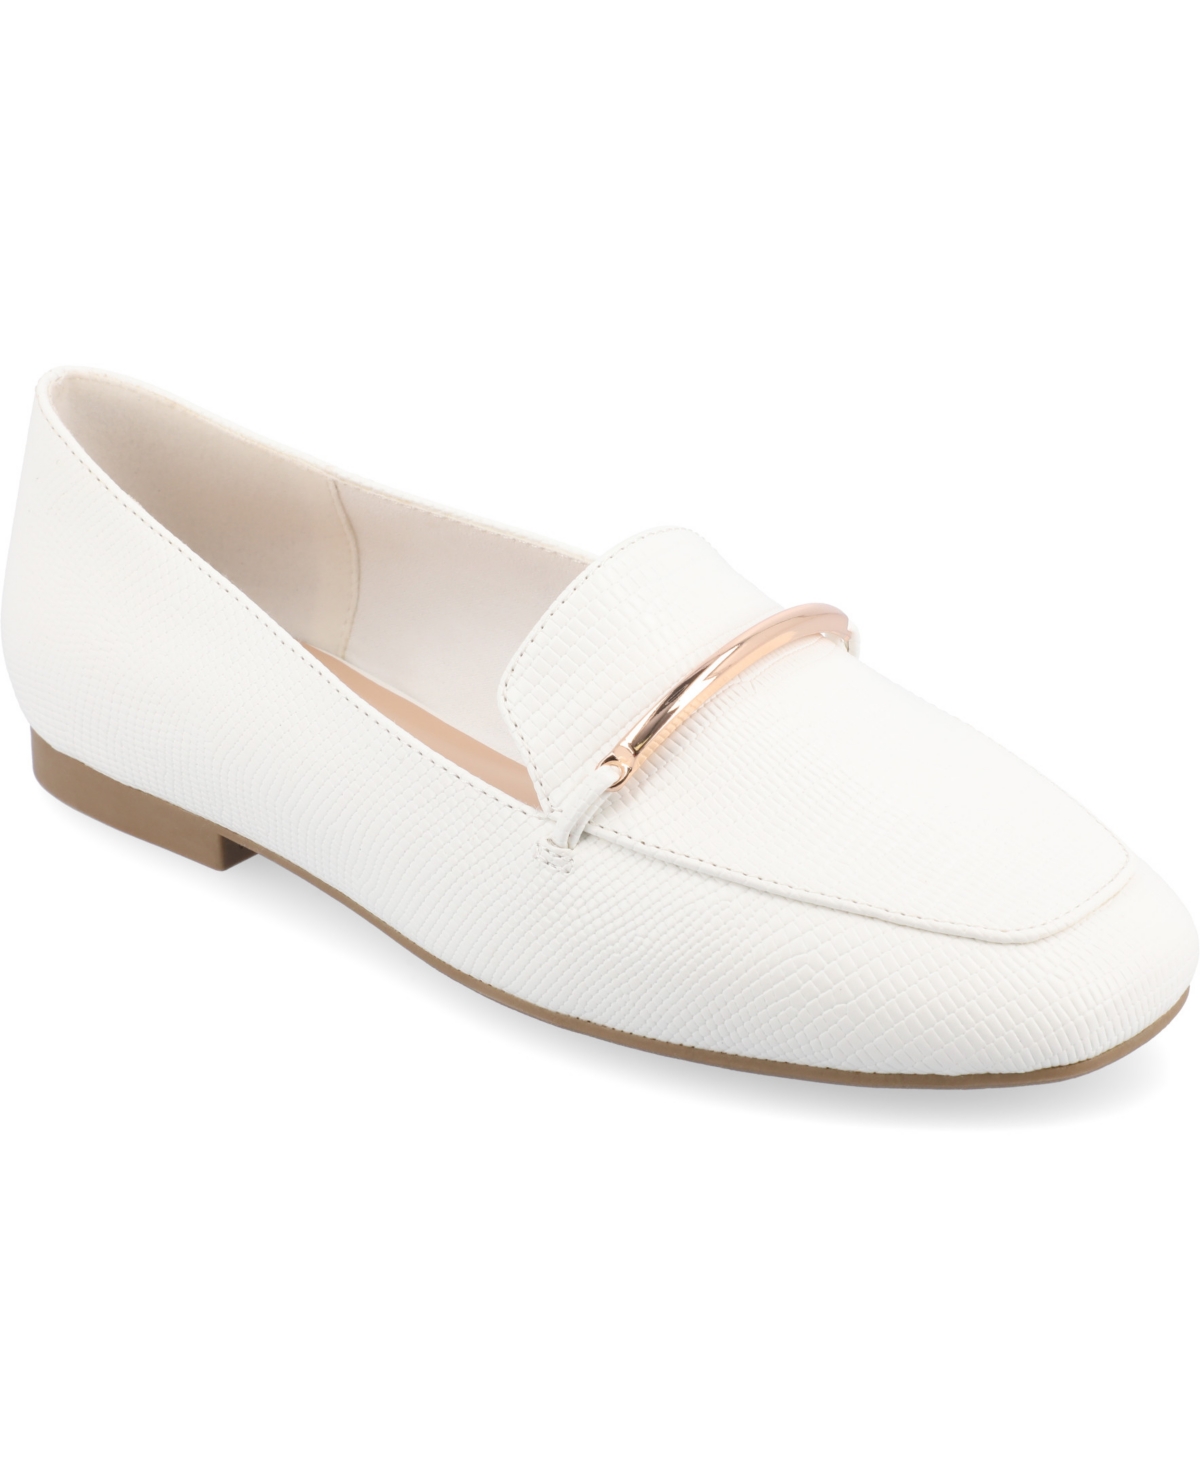 Women's Wrenn Wide Width Slip On Loafers - White